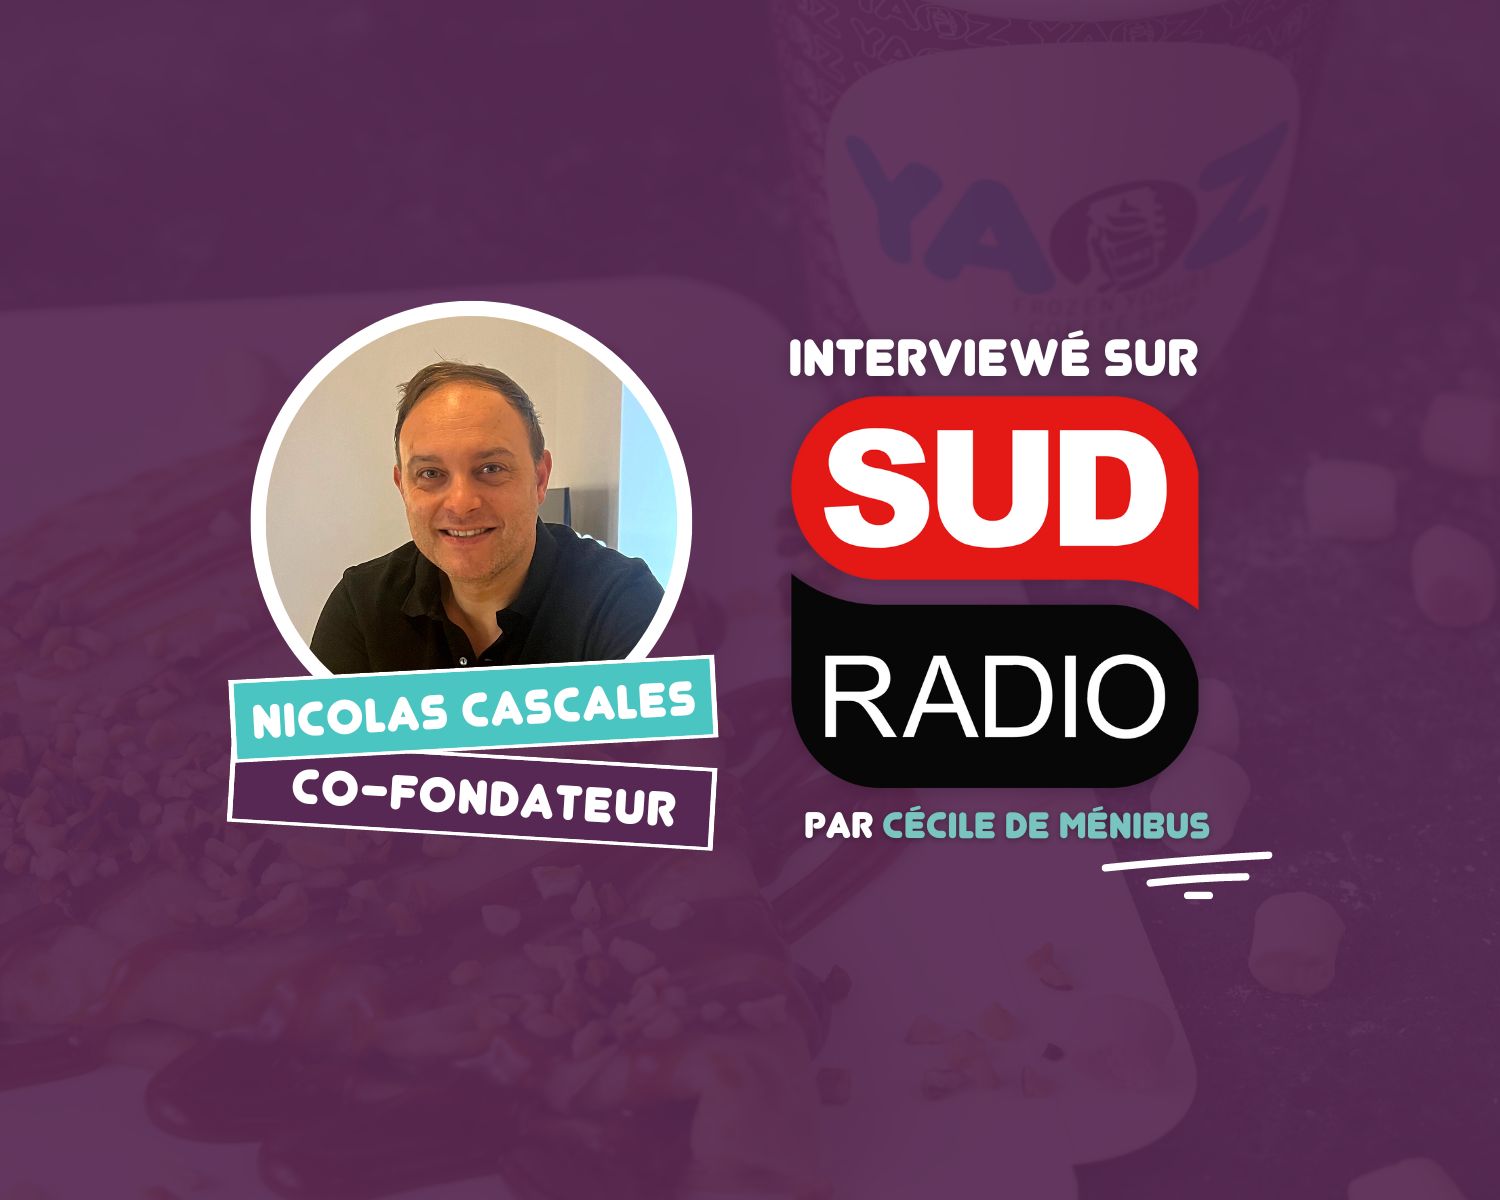 Interview sud radio YAOZ Nicolas Cascales Cecile de menibus